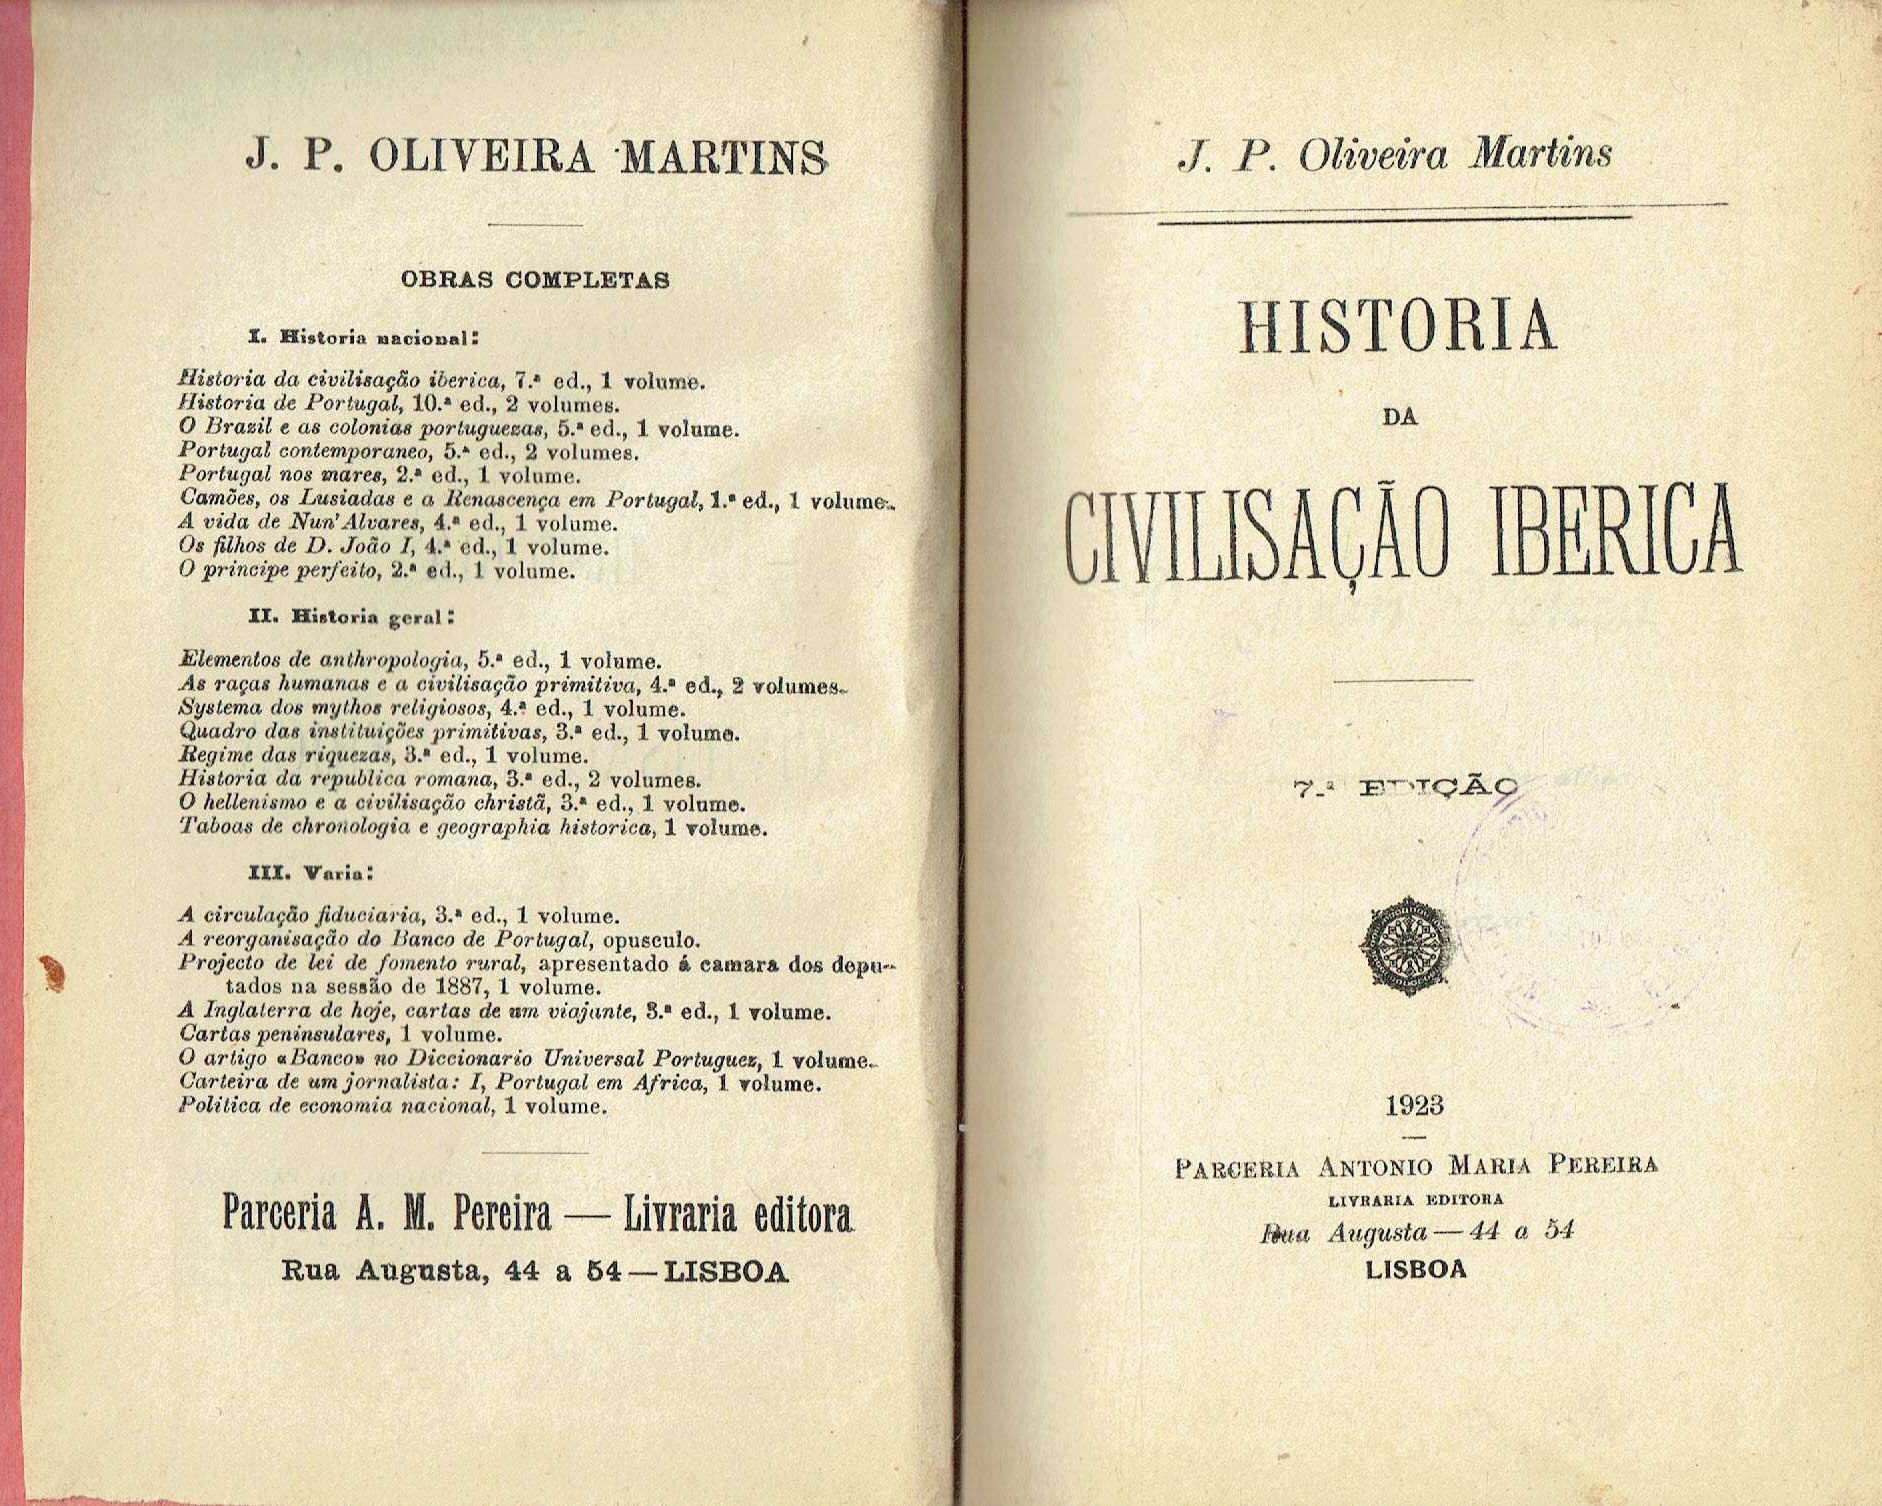 7837

Historia da civilização ibérica  
de Oliveira Martins.